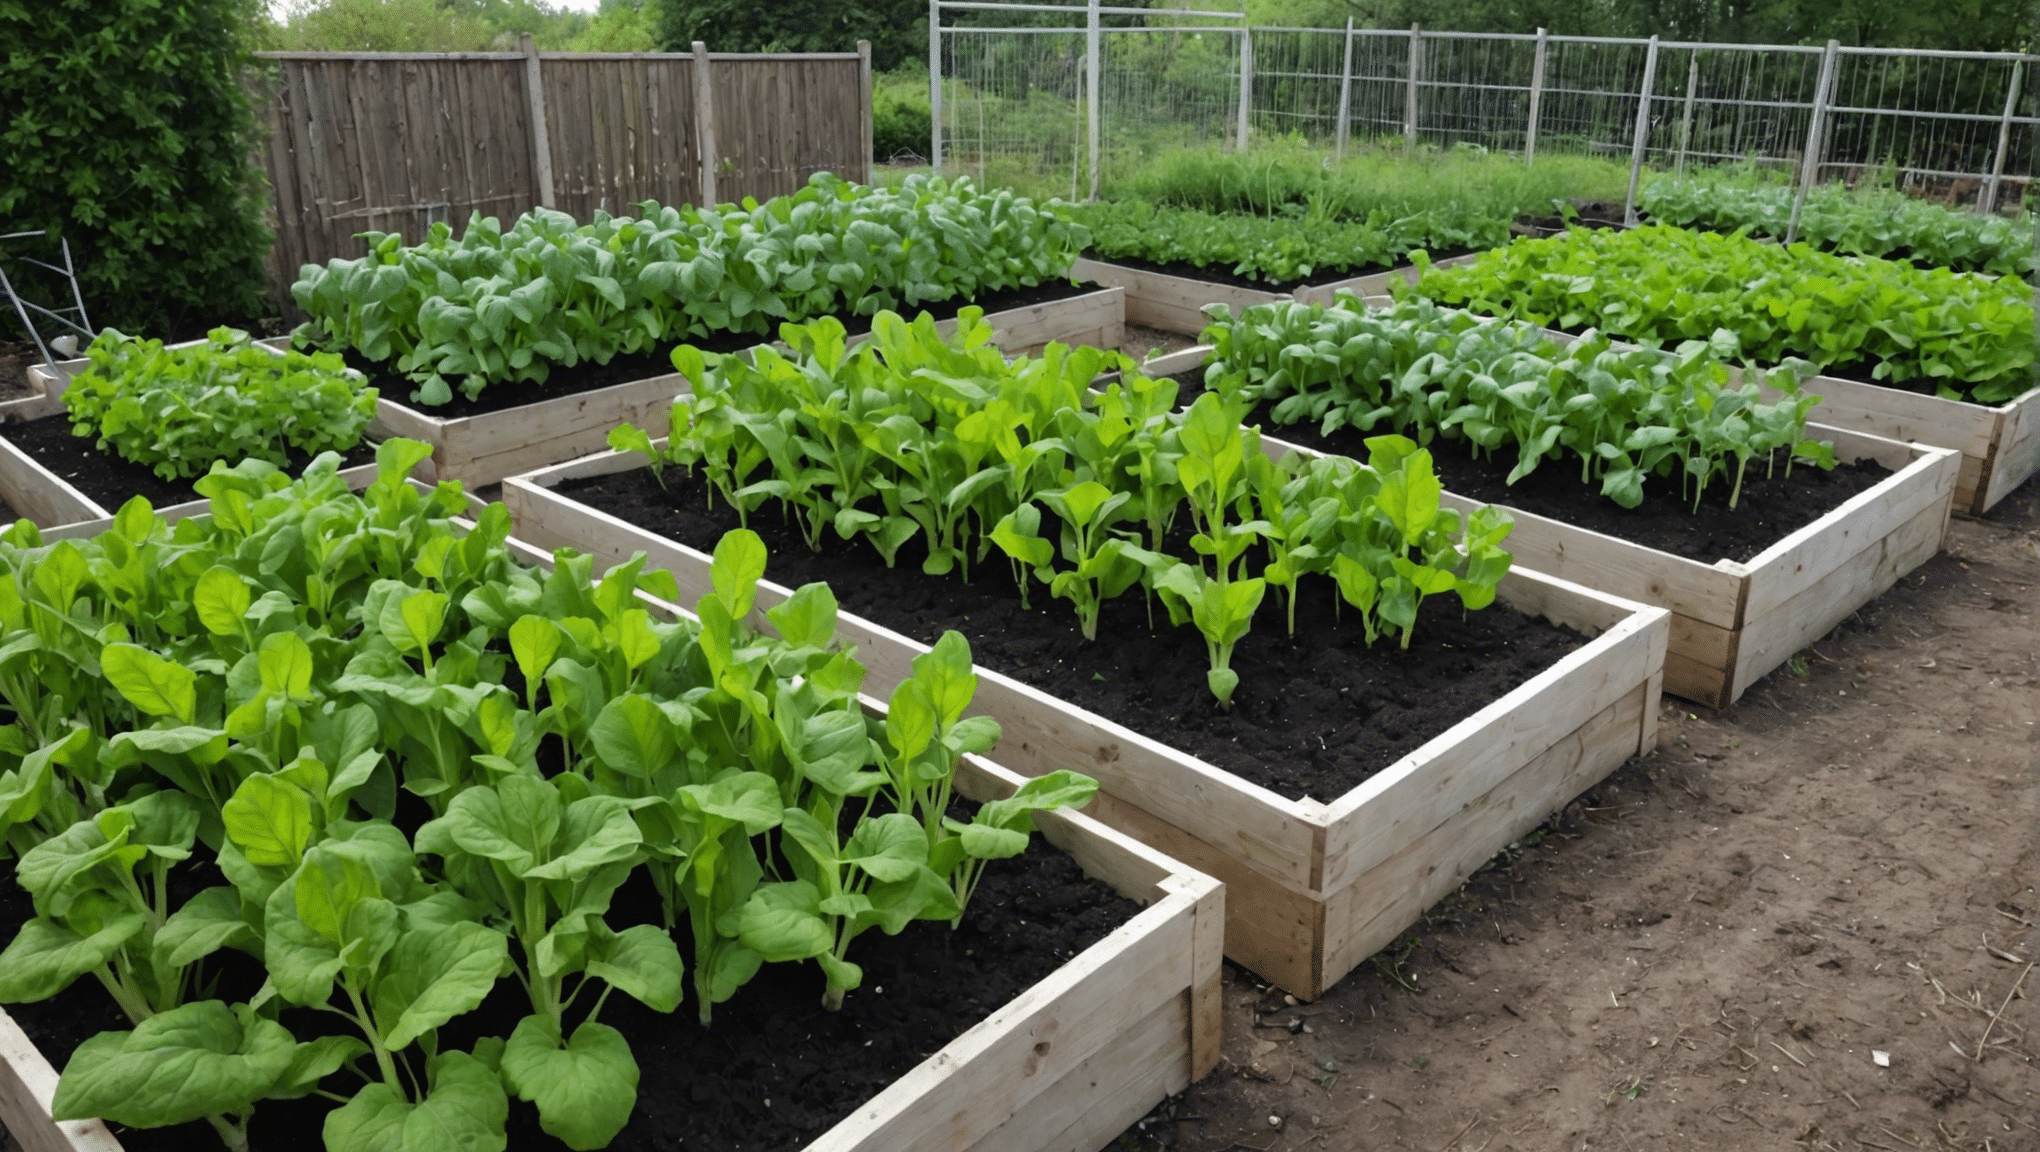 odkryj podstawowe zadania, które należy wykonać w ogrodzie warzywnym na początku kwietnia, aby zapewnić wspaniały sezon wegetacyjny. praktyczne porady i wskazówki dotyczące przygotowania ogrodu warzywnego na wiosnę.